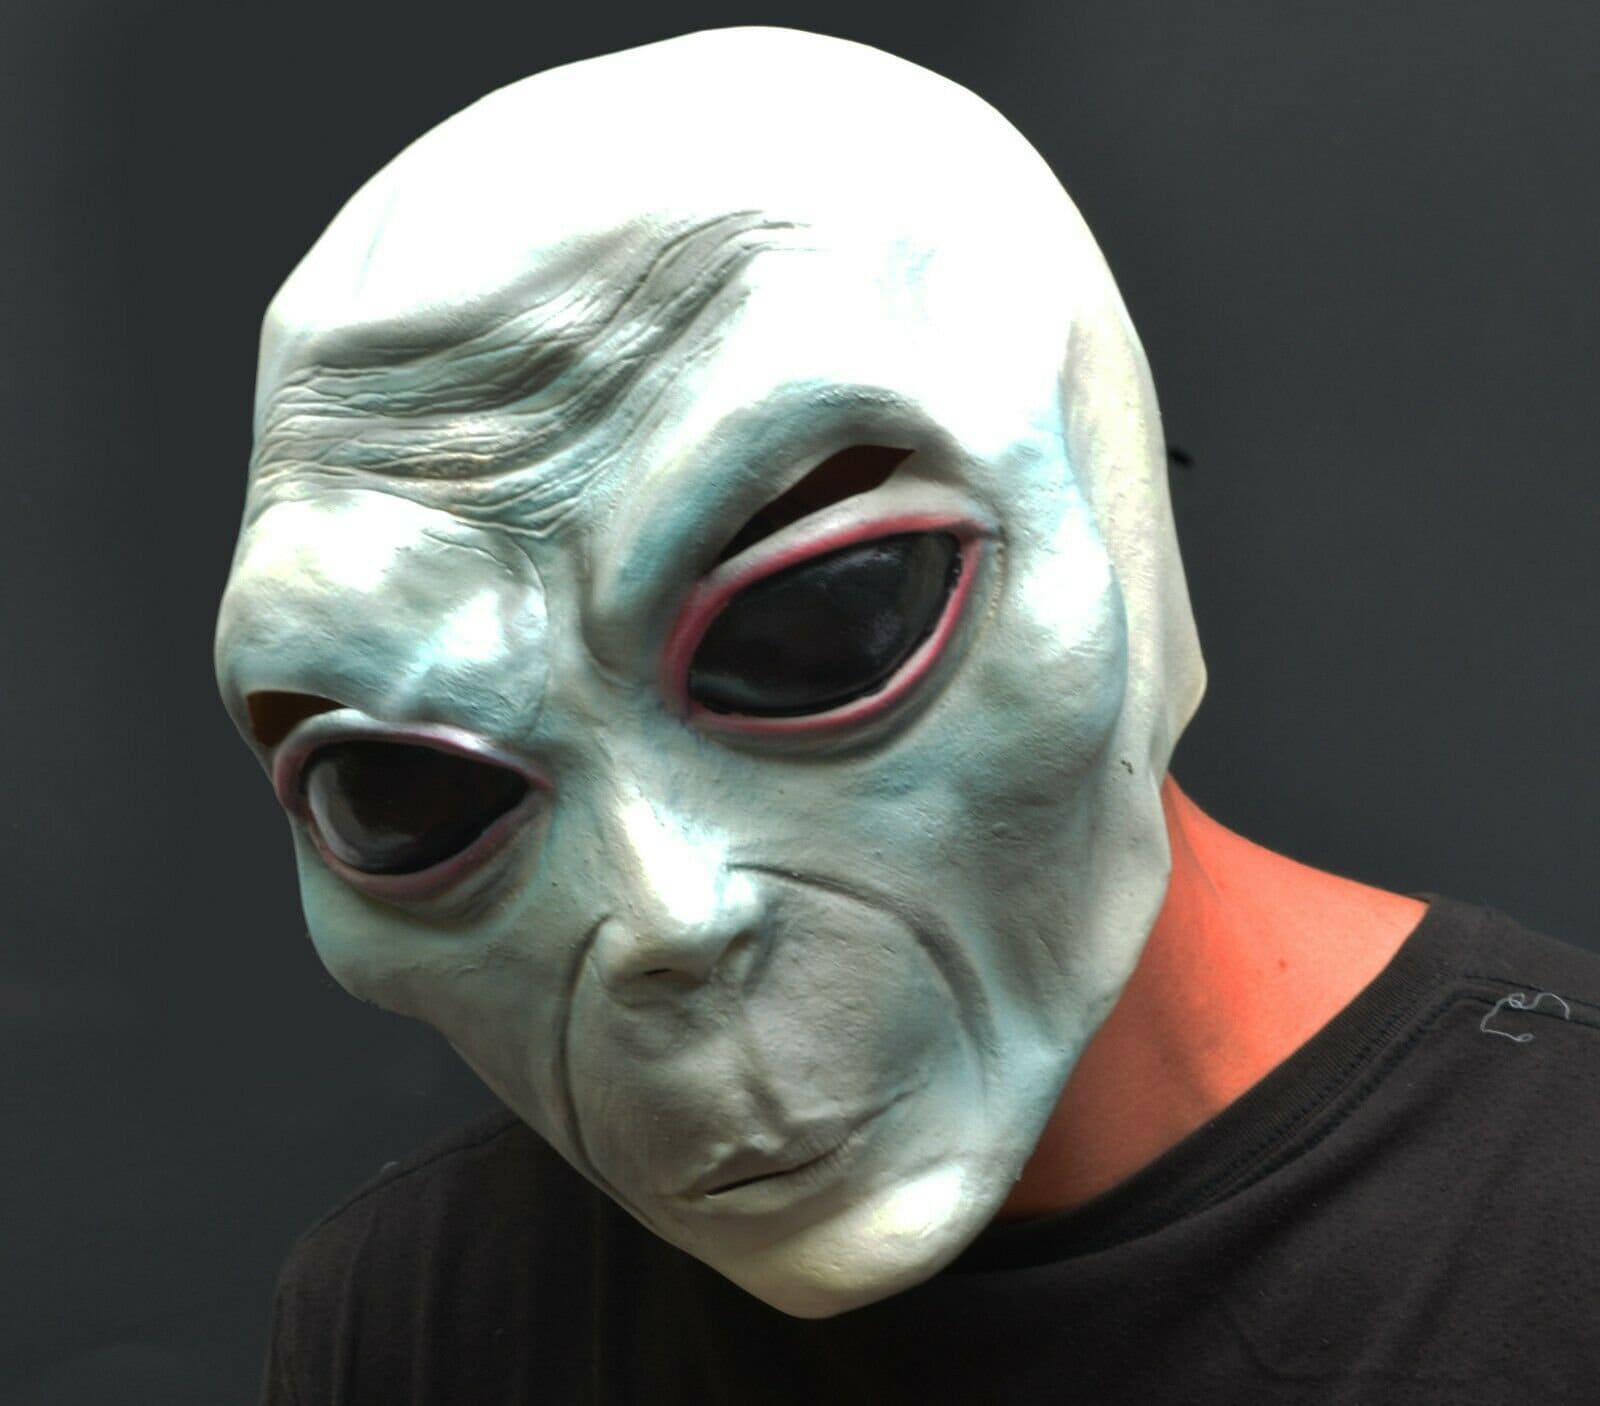 Máscaras Alienígenas 51 Área UFO Máscara De Motocicleta Gris Látex Completa  Cara Cosplay Organismo Extraterrestre Disfraces Accesorios Para Halloween